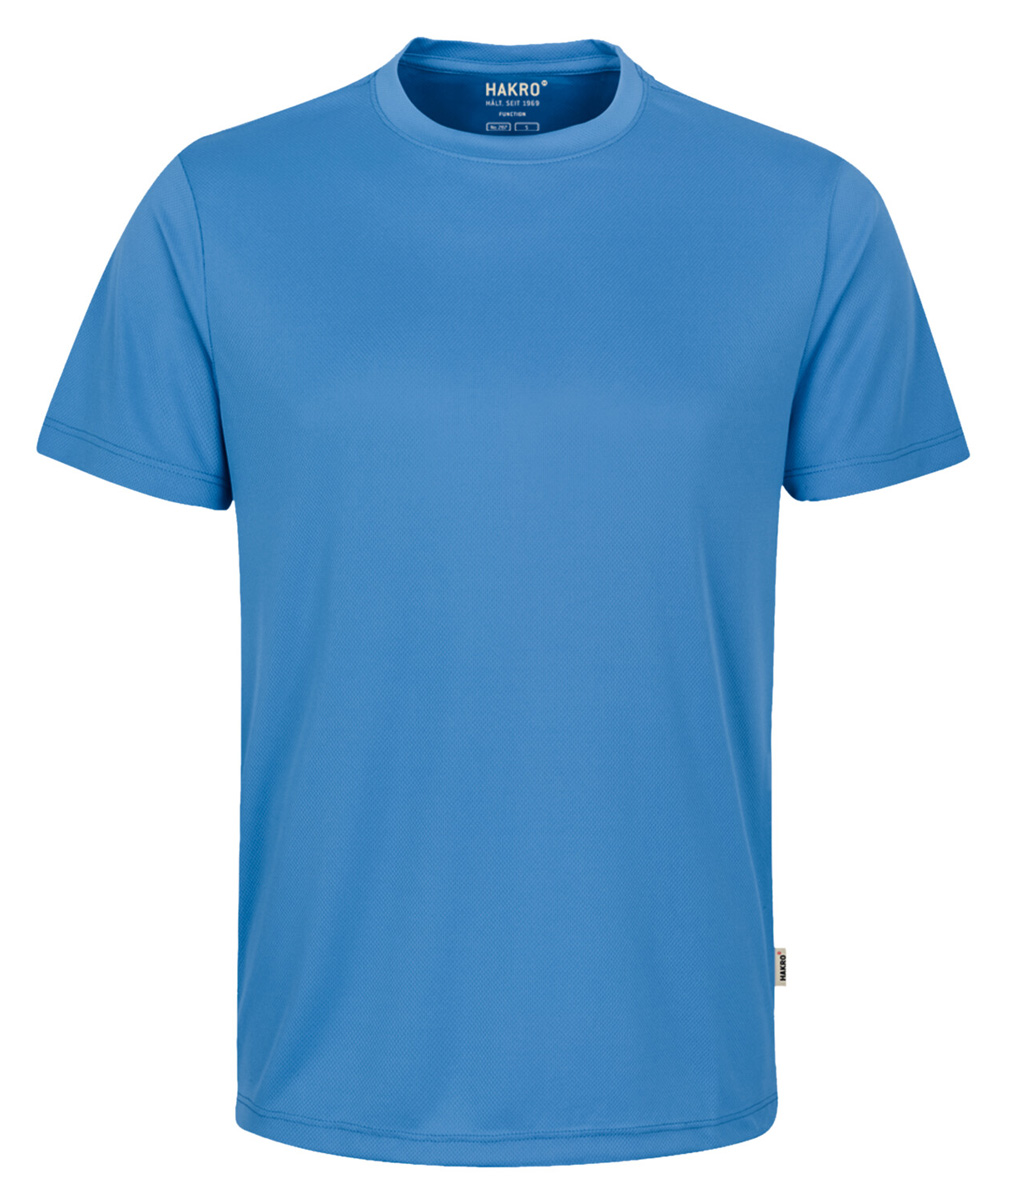 Hakro 287 Coolmax T-Shirt, schwarz